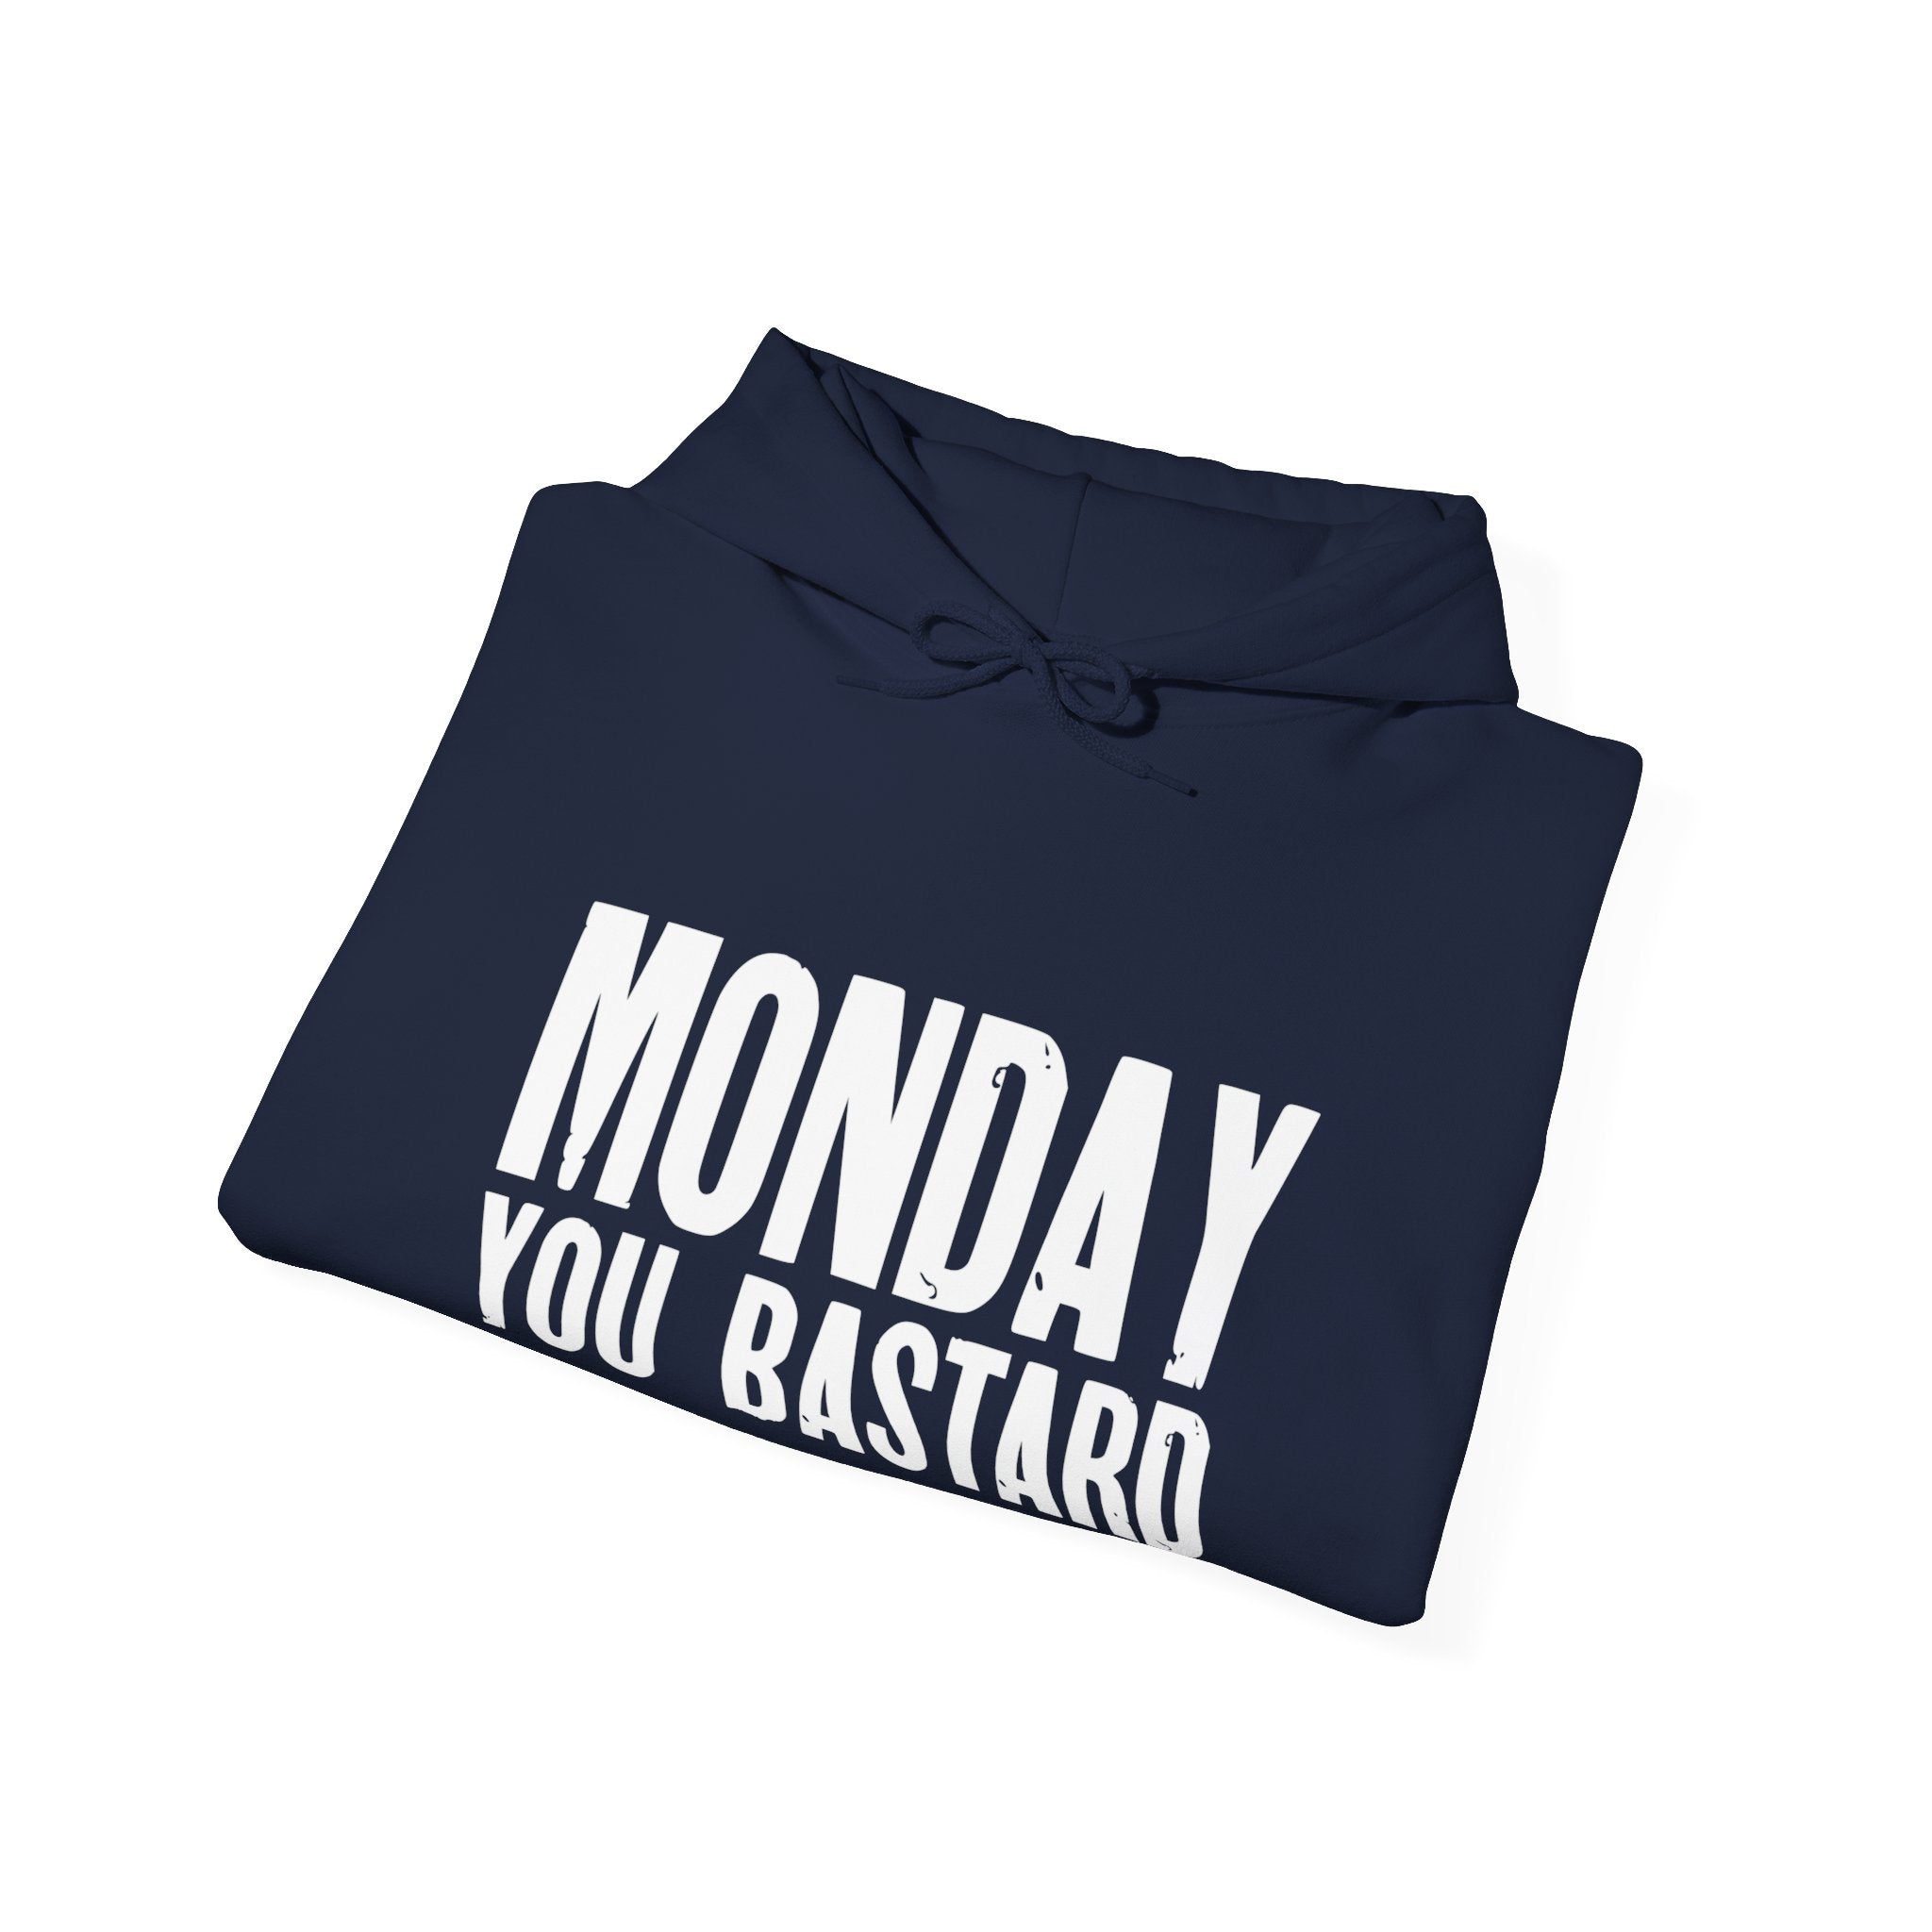 Monday You Bastard - Hooded Sweatshirt